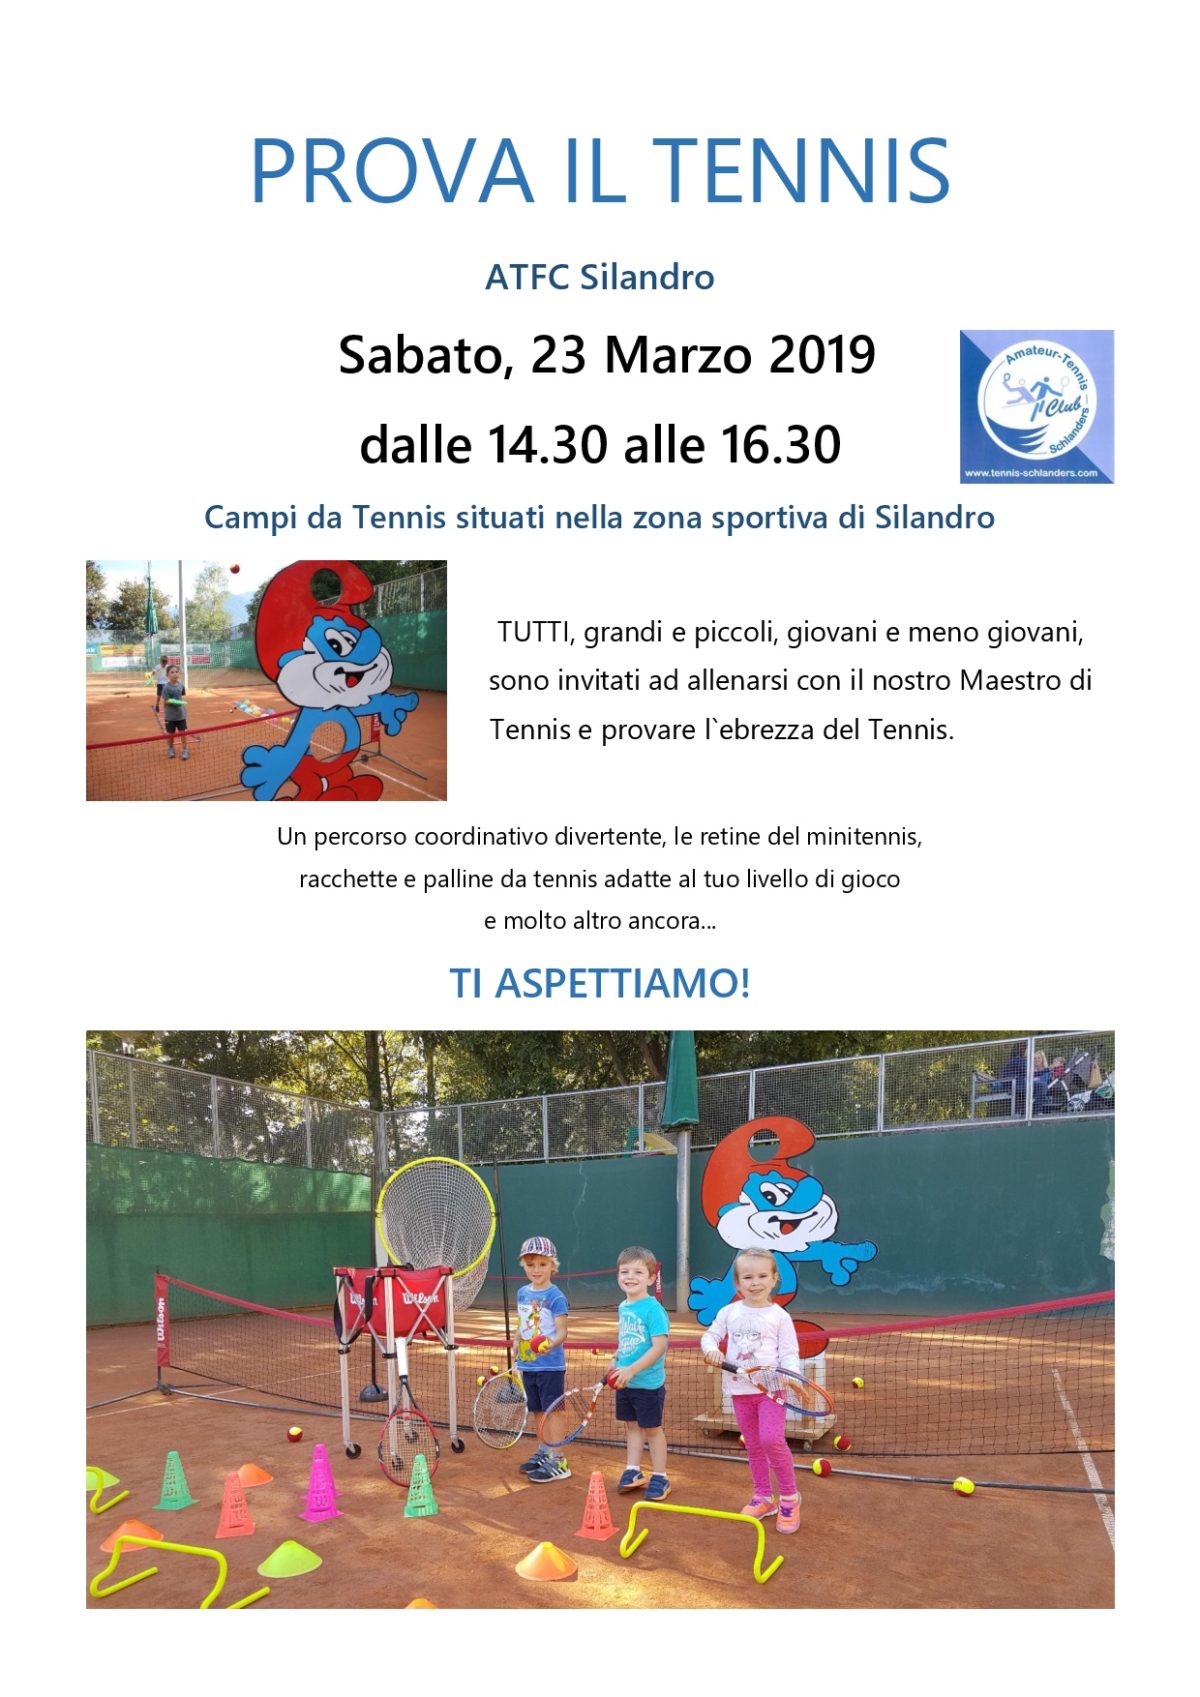 ATFC Silandro Prova il Tennis Primavera 2019